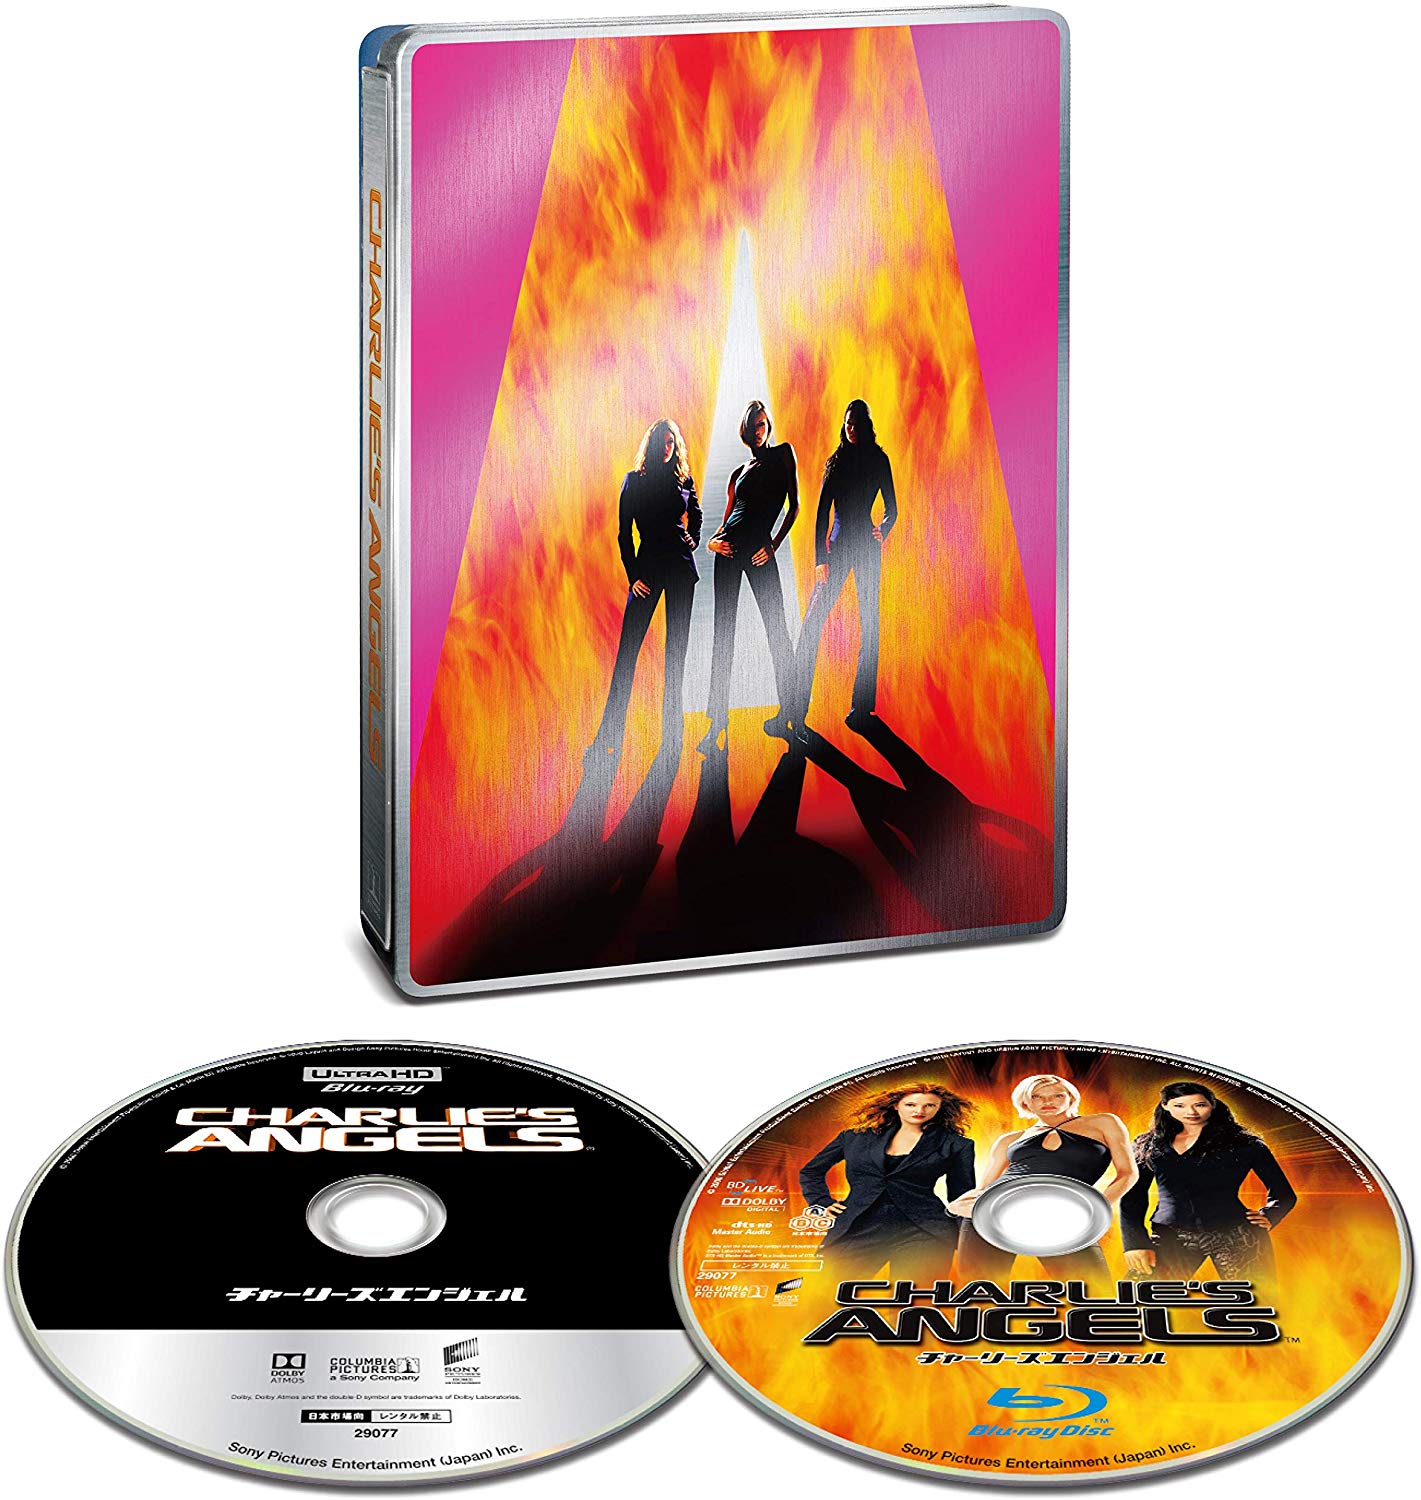 チャーリーズ・エンジェル 4K Ultra HD + ブルーレイ Amazon.co.jp限定 スチールブック Charlie's Angels steelbook